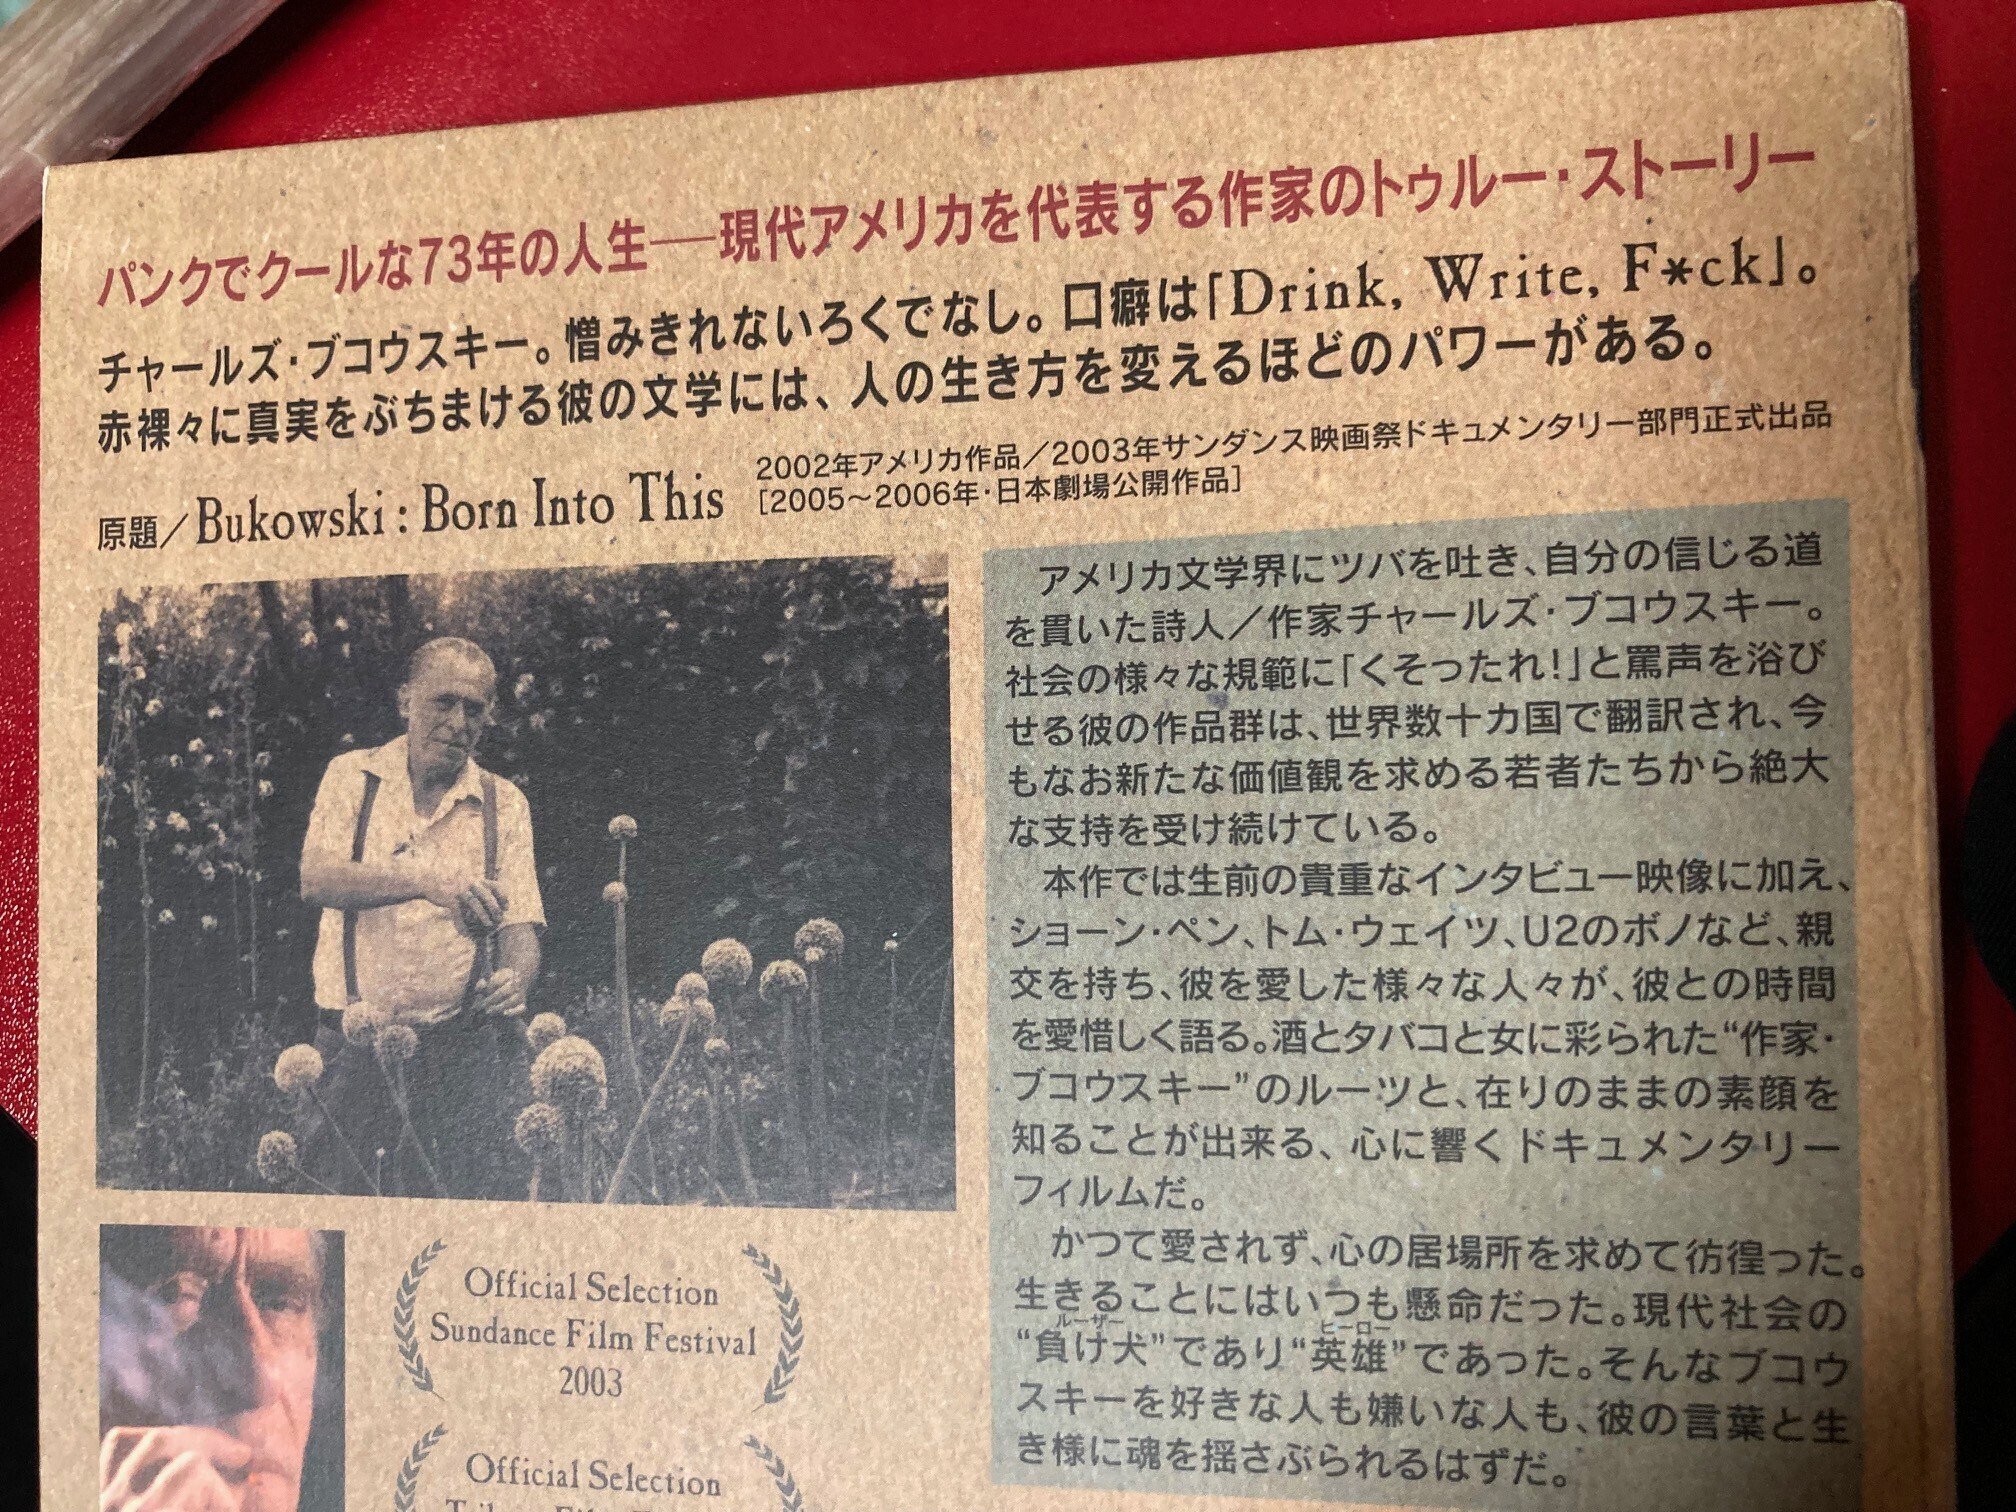 売り出し割引 ブコウスキー:オールド・パンク(´02米) - DVD